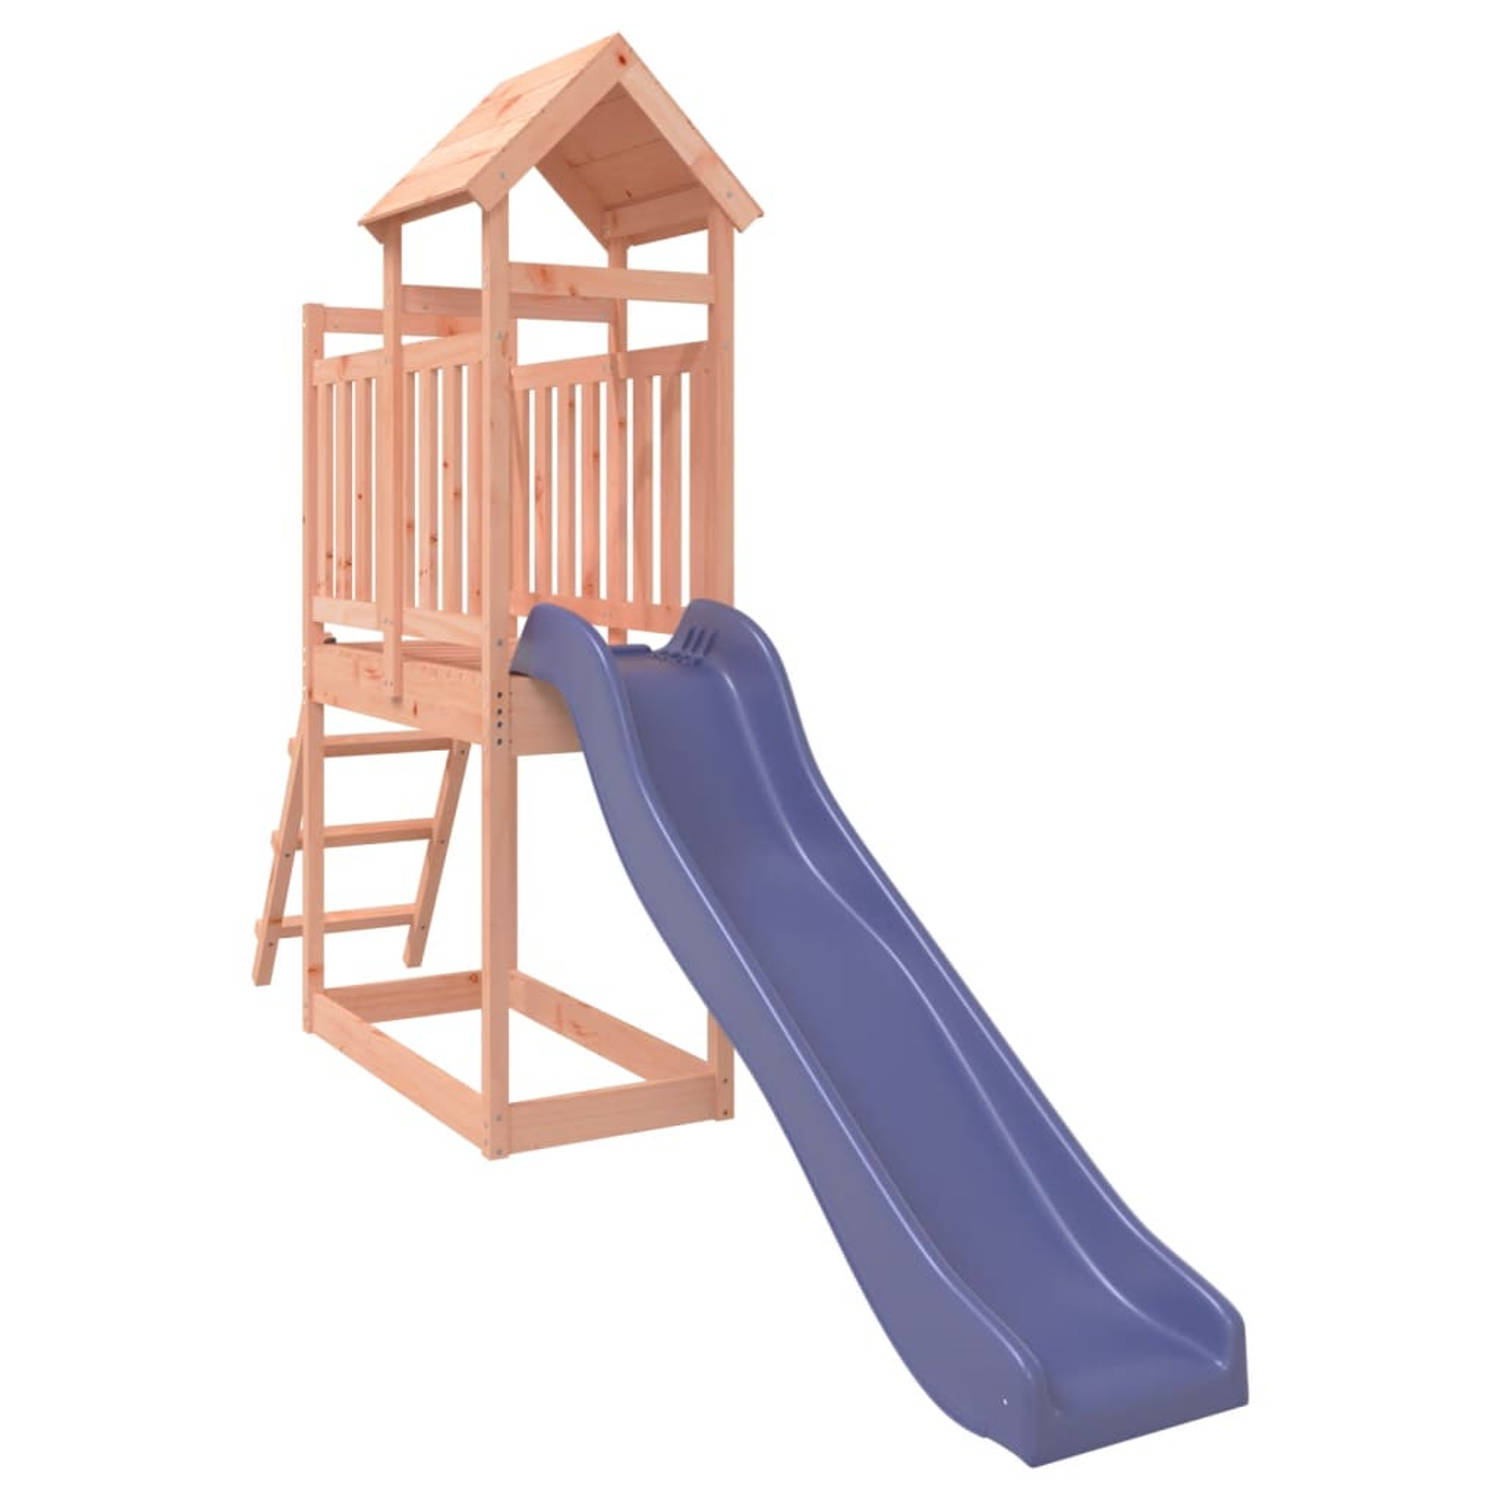 The Living Store Speeltoren - Materiaal- massief douglashout - Afmetingen- 110 x 64 x 214 cm - Kenen- 1x speeltoren - 1x ladder - 1x golvende glijbaan - Voor kinderen van 3-8 jaar